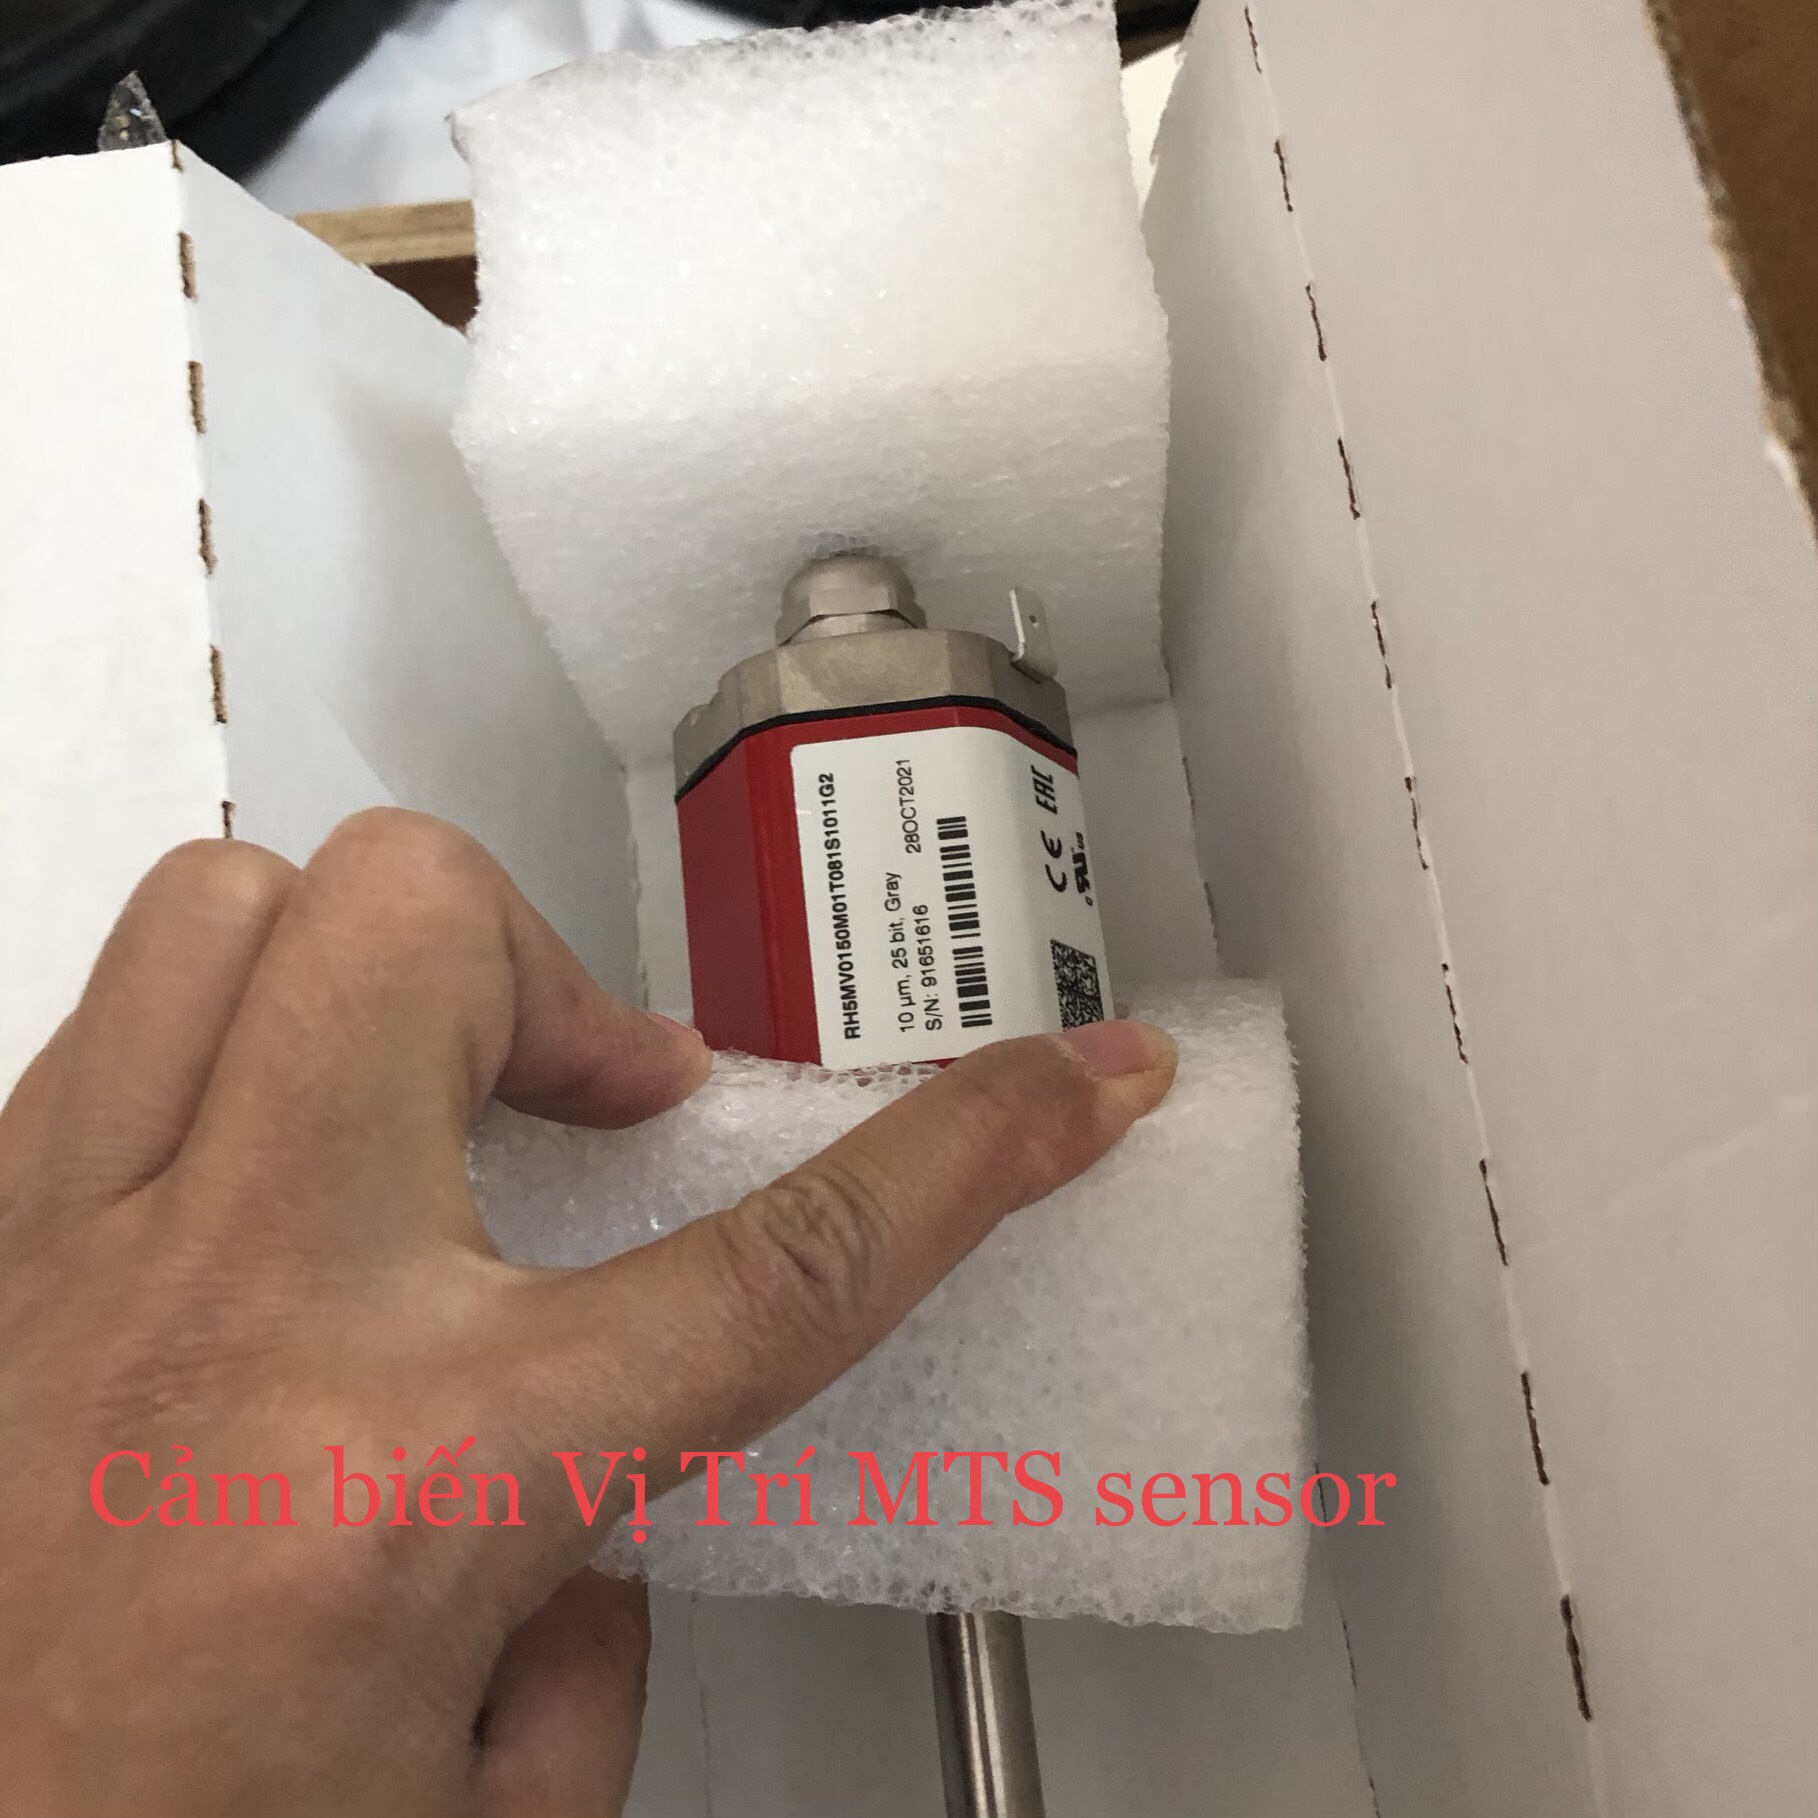 mts-sensor-vietnam-temposonics-mts-sensor-vietnam-rh5mv0130m01t101s1011g2-dai-ly-mts-sensor-vietnam.png